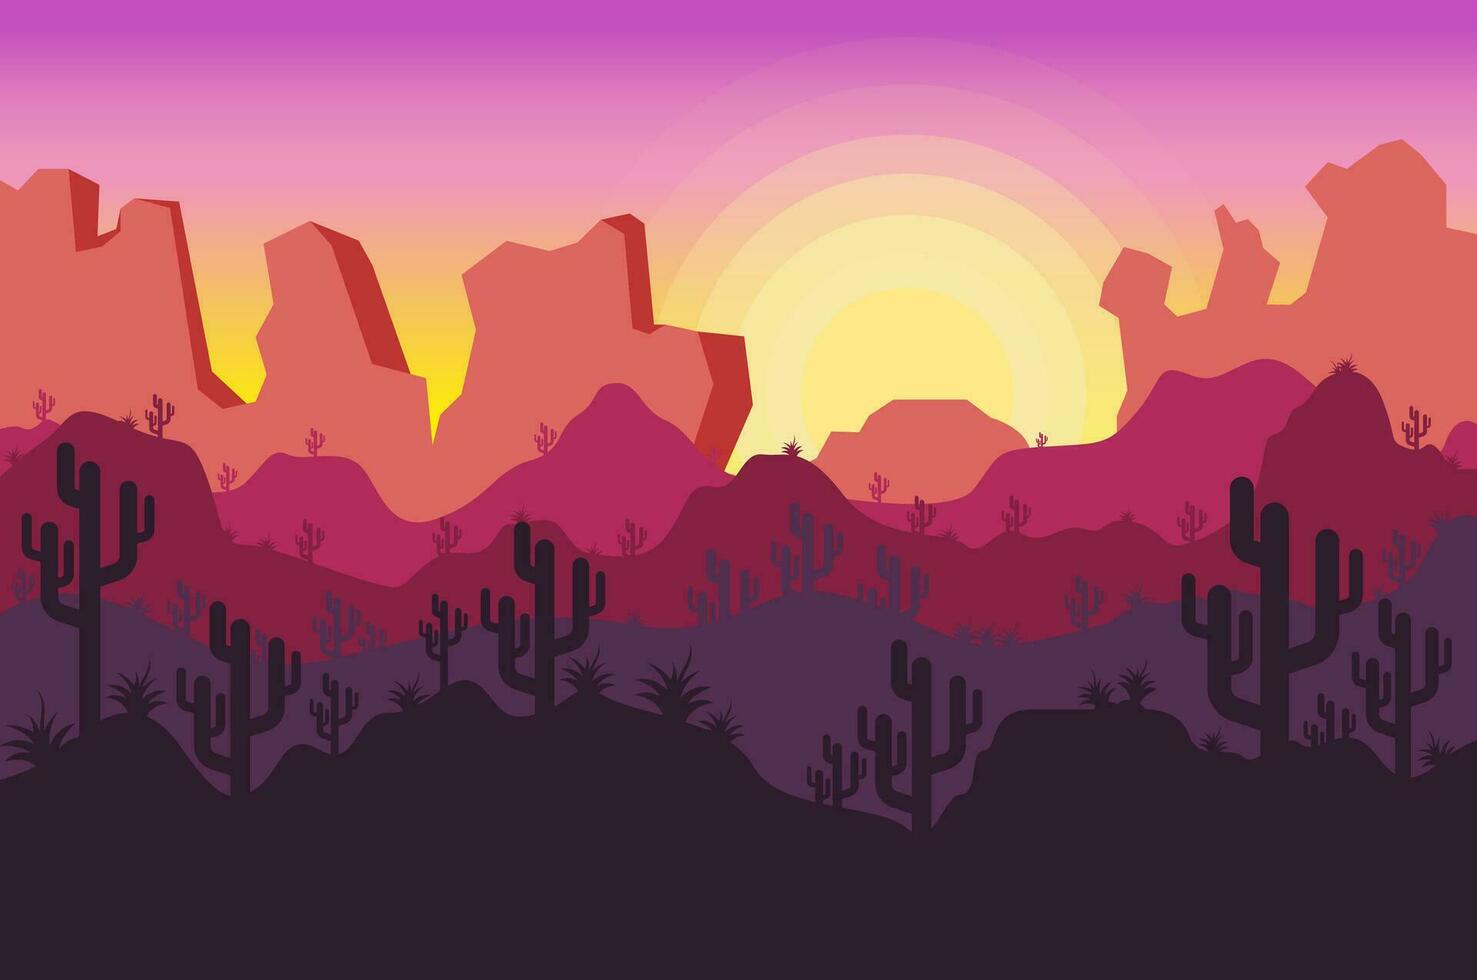 piatto cartone animato illustrazione di bellissimo deserto pomeriggio panorama. largo distesa di sabbia, cactus impianti e tramonto. panoramico design vettore